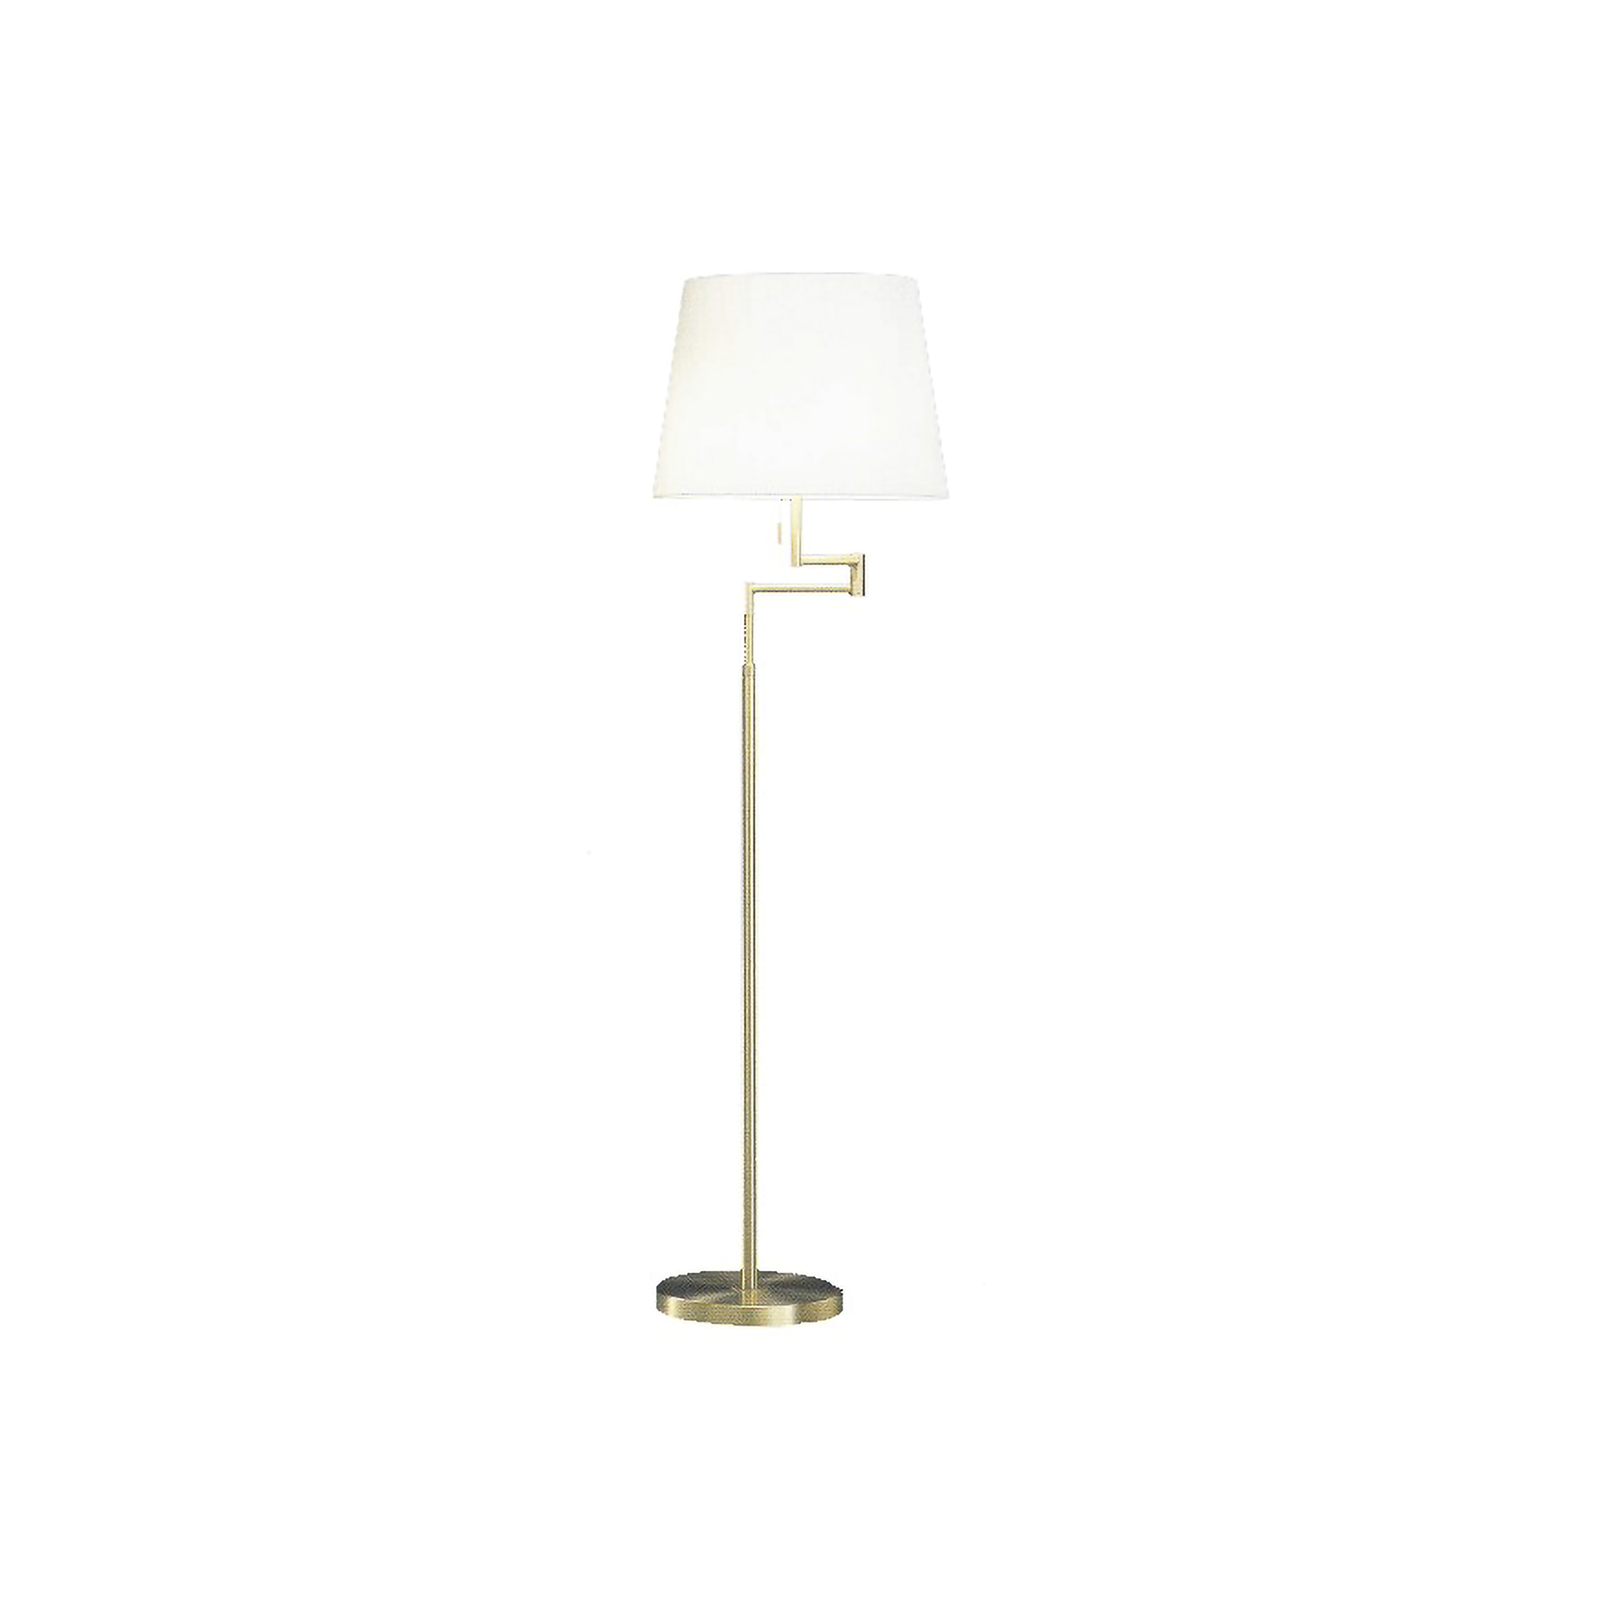 Lampa stojąca Lilo, kolor matowy mosiądz, stożkowy klosz